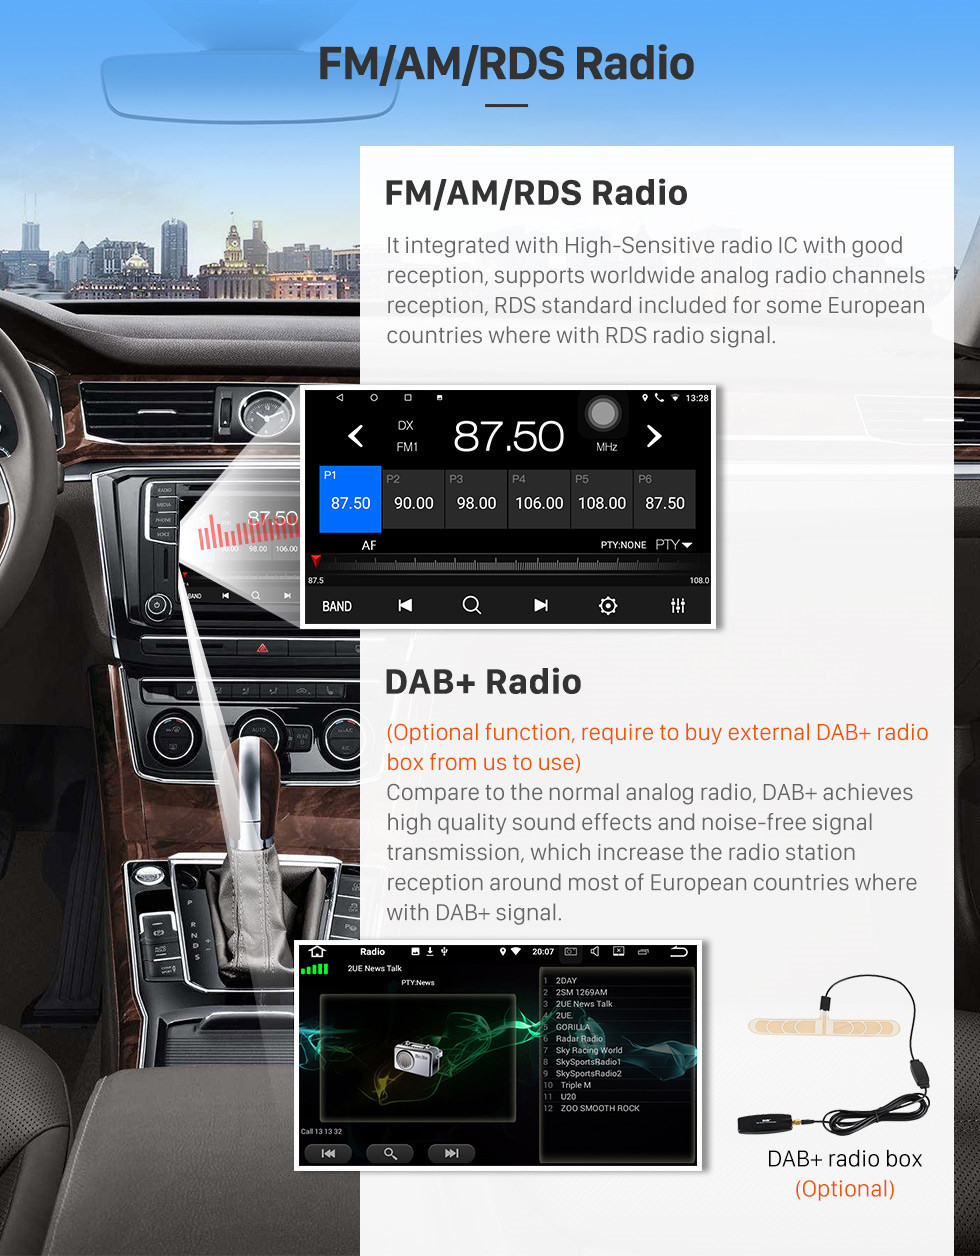 Seicane 9-дюймовый сенсорный экран HD Android 10.0 2015 2016 SUZUKI VITARA Радио Bluetooth GPS-навигация Автомобильная стереосистема с OBD2 WIFI Резервная камера Зеркальная связь Управление рулевого колеса